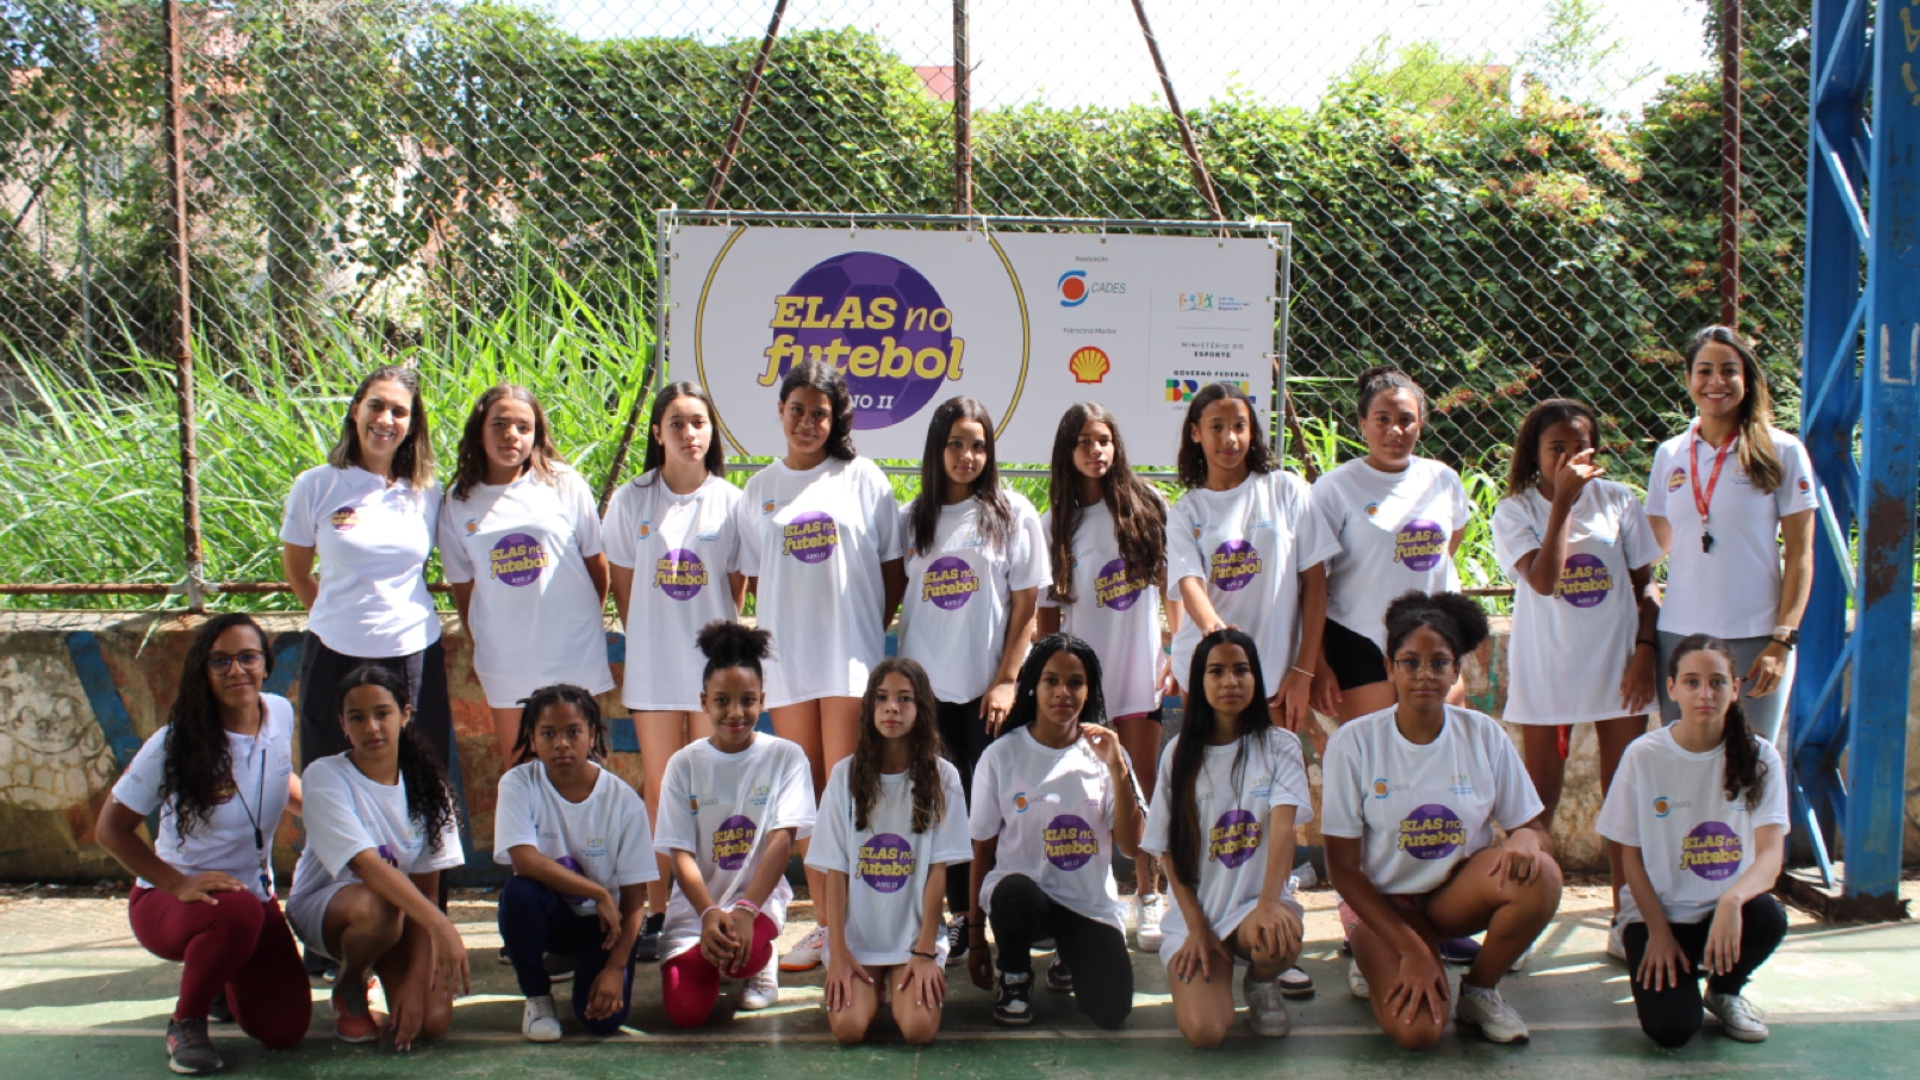 Shell apoia projeto ELAS no Futebol para promover igualdade de gênero no esporte